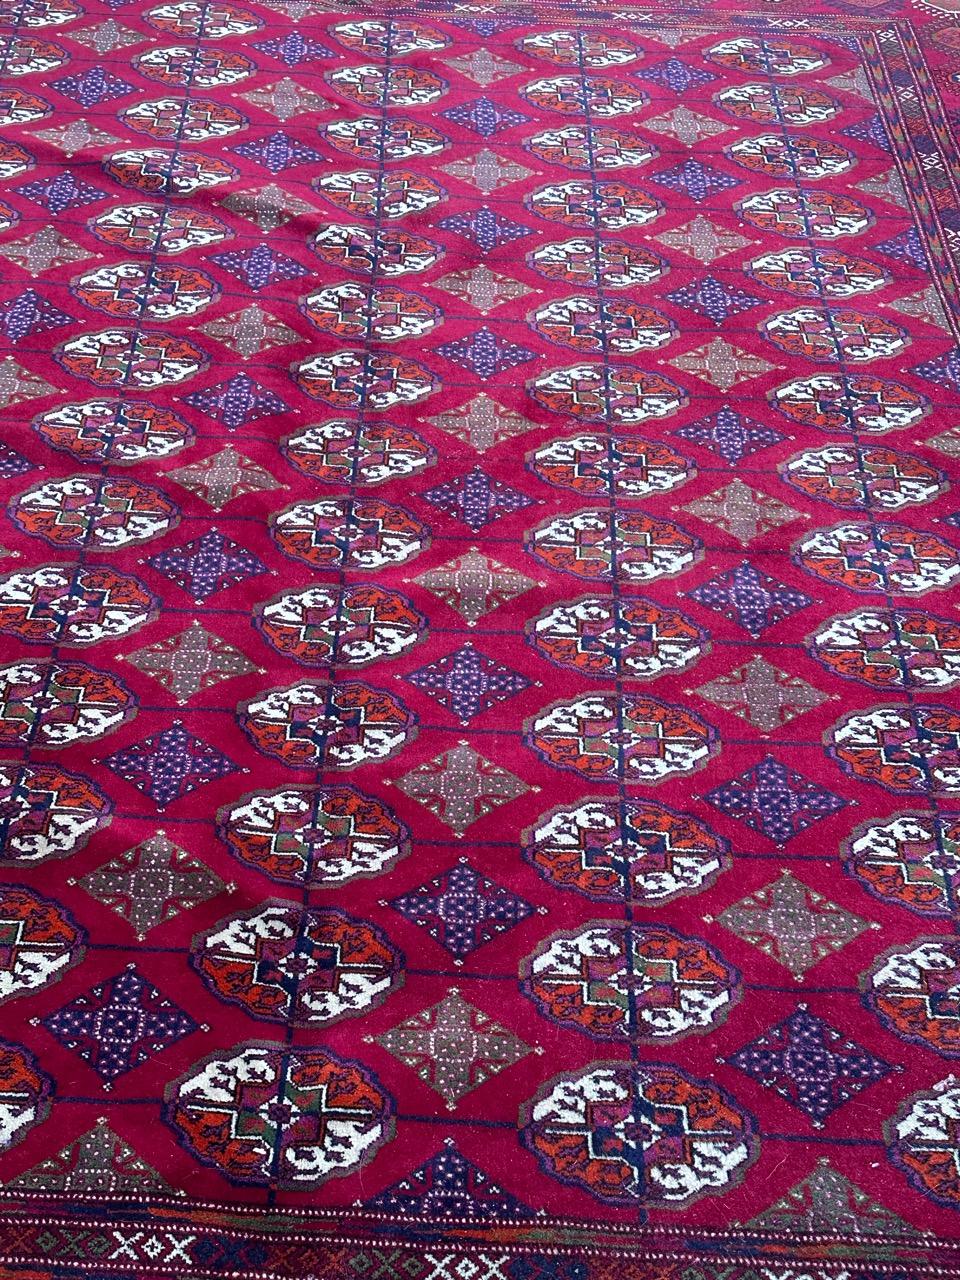 Wunderschöner großer Vintage-Bokhara-Teppich mit schönem geometrischem Muster typischer Bokhara-Teppiche und schönen Farben mit einem granatapfelroten Feld, blau, orange, grün, lila, rosa und weiß im Muster, komplett und fein handgeknüpft mit Wolle